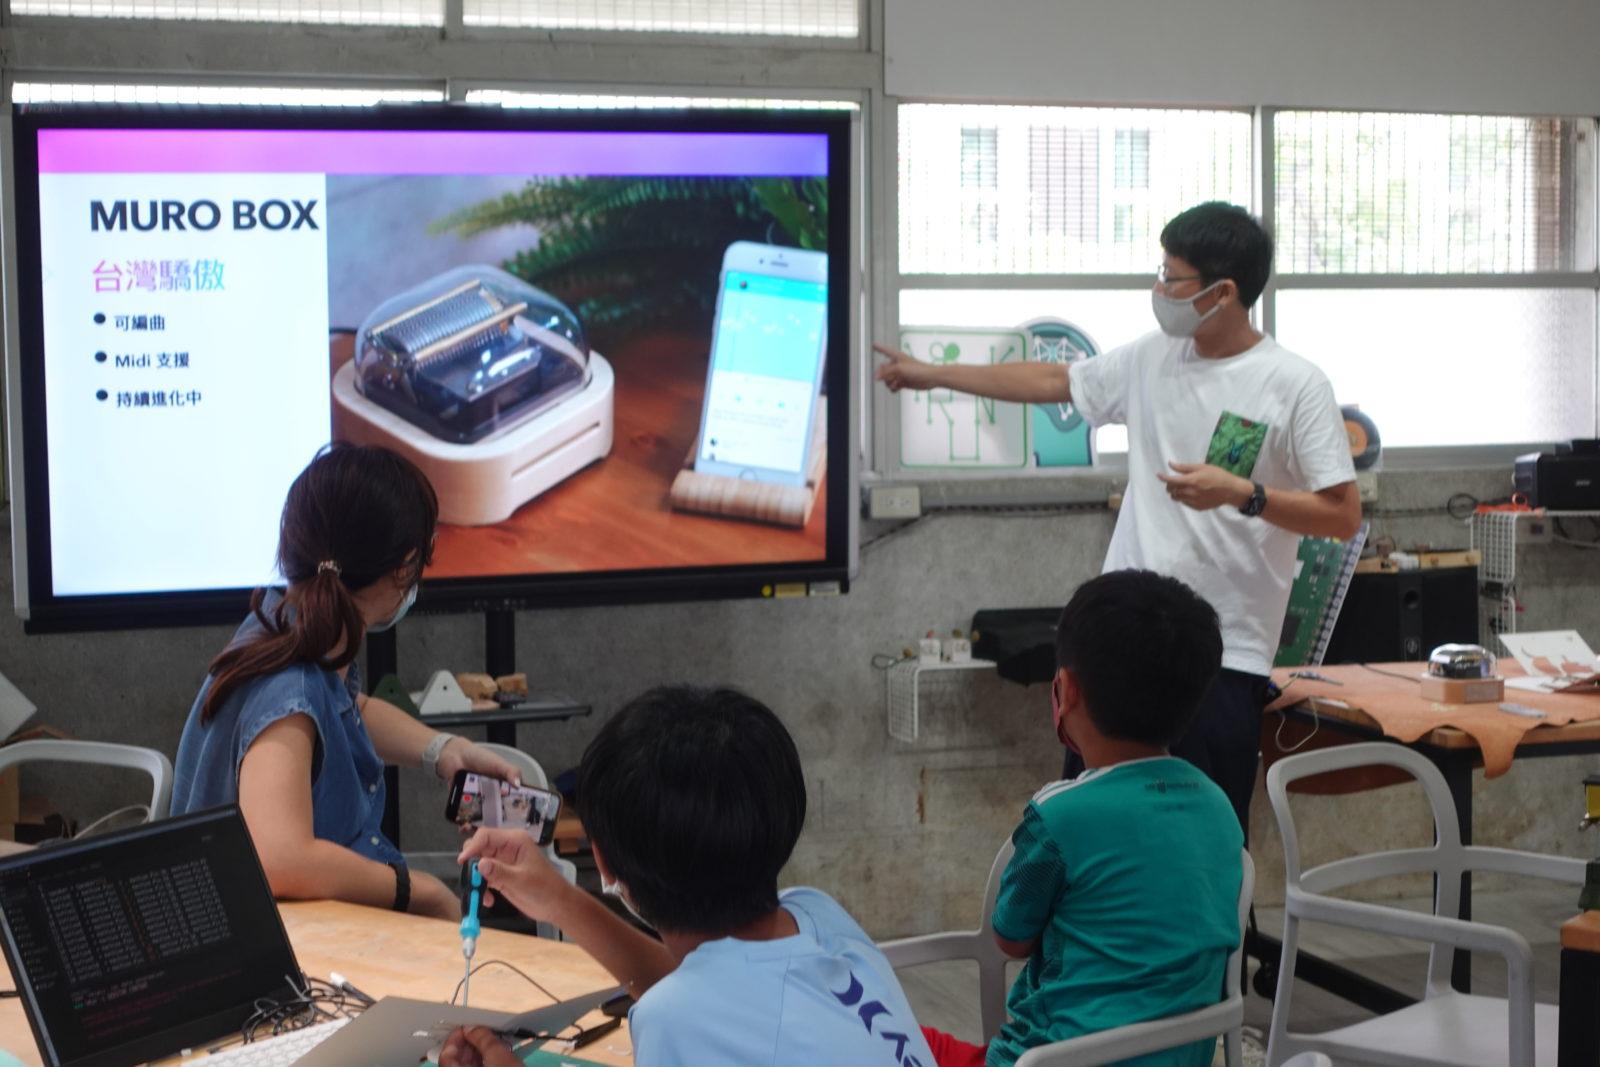 王老师在上课中介绍Muro Box开发历程，认为这也是任务导向、问题解决的最佳学习范例。